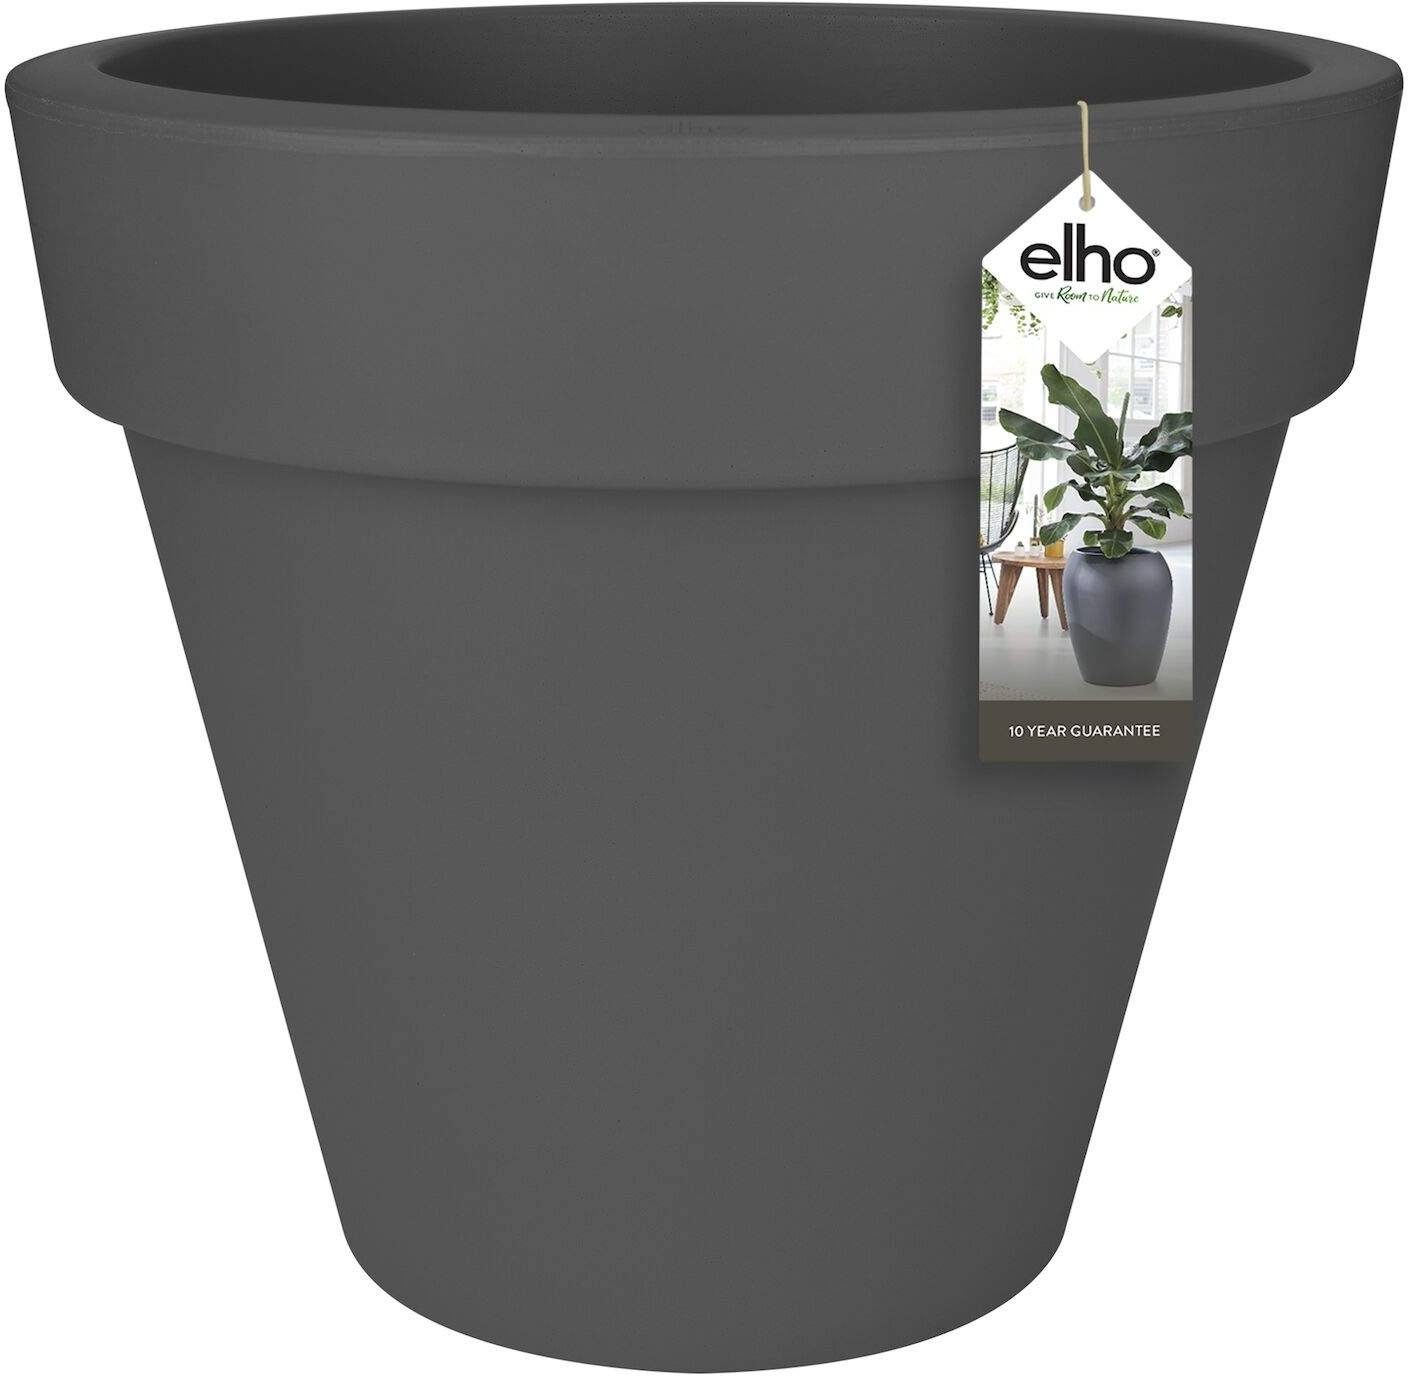 elho Pure Round 50 - Blumentopf für Innen & Außen - Ø 49.0 x H 44.4 cm - Schwarz/Anthrazit